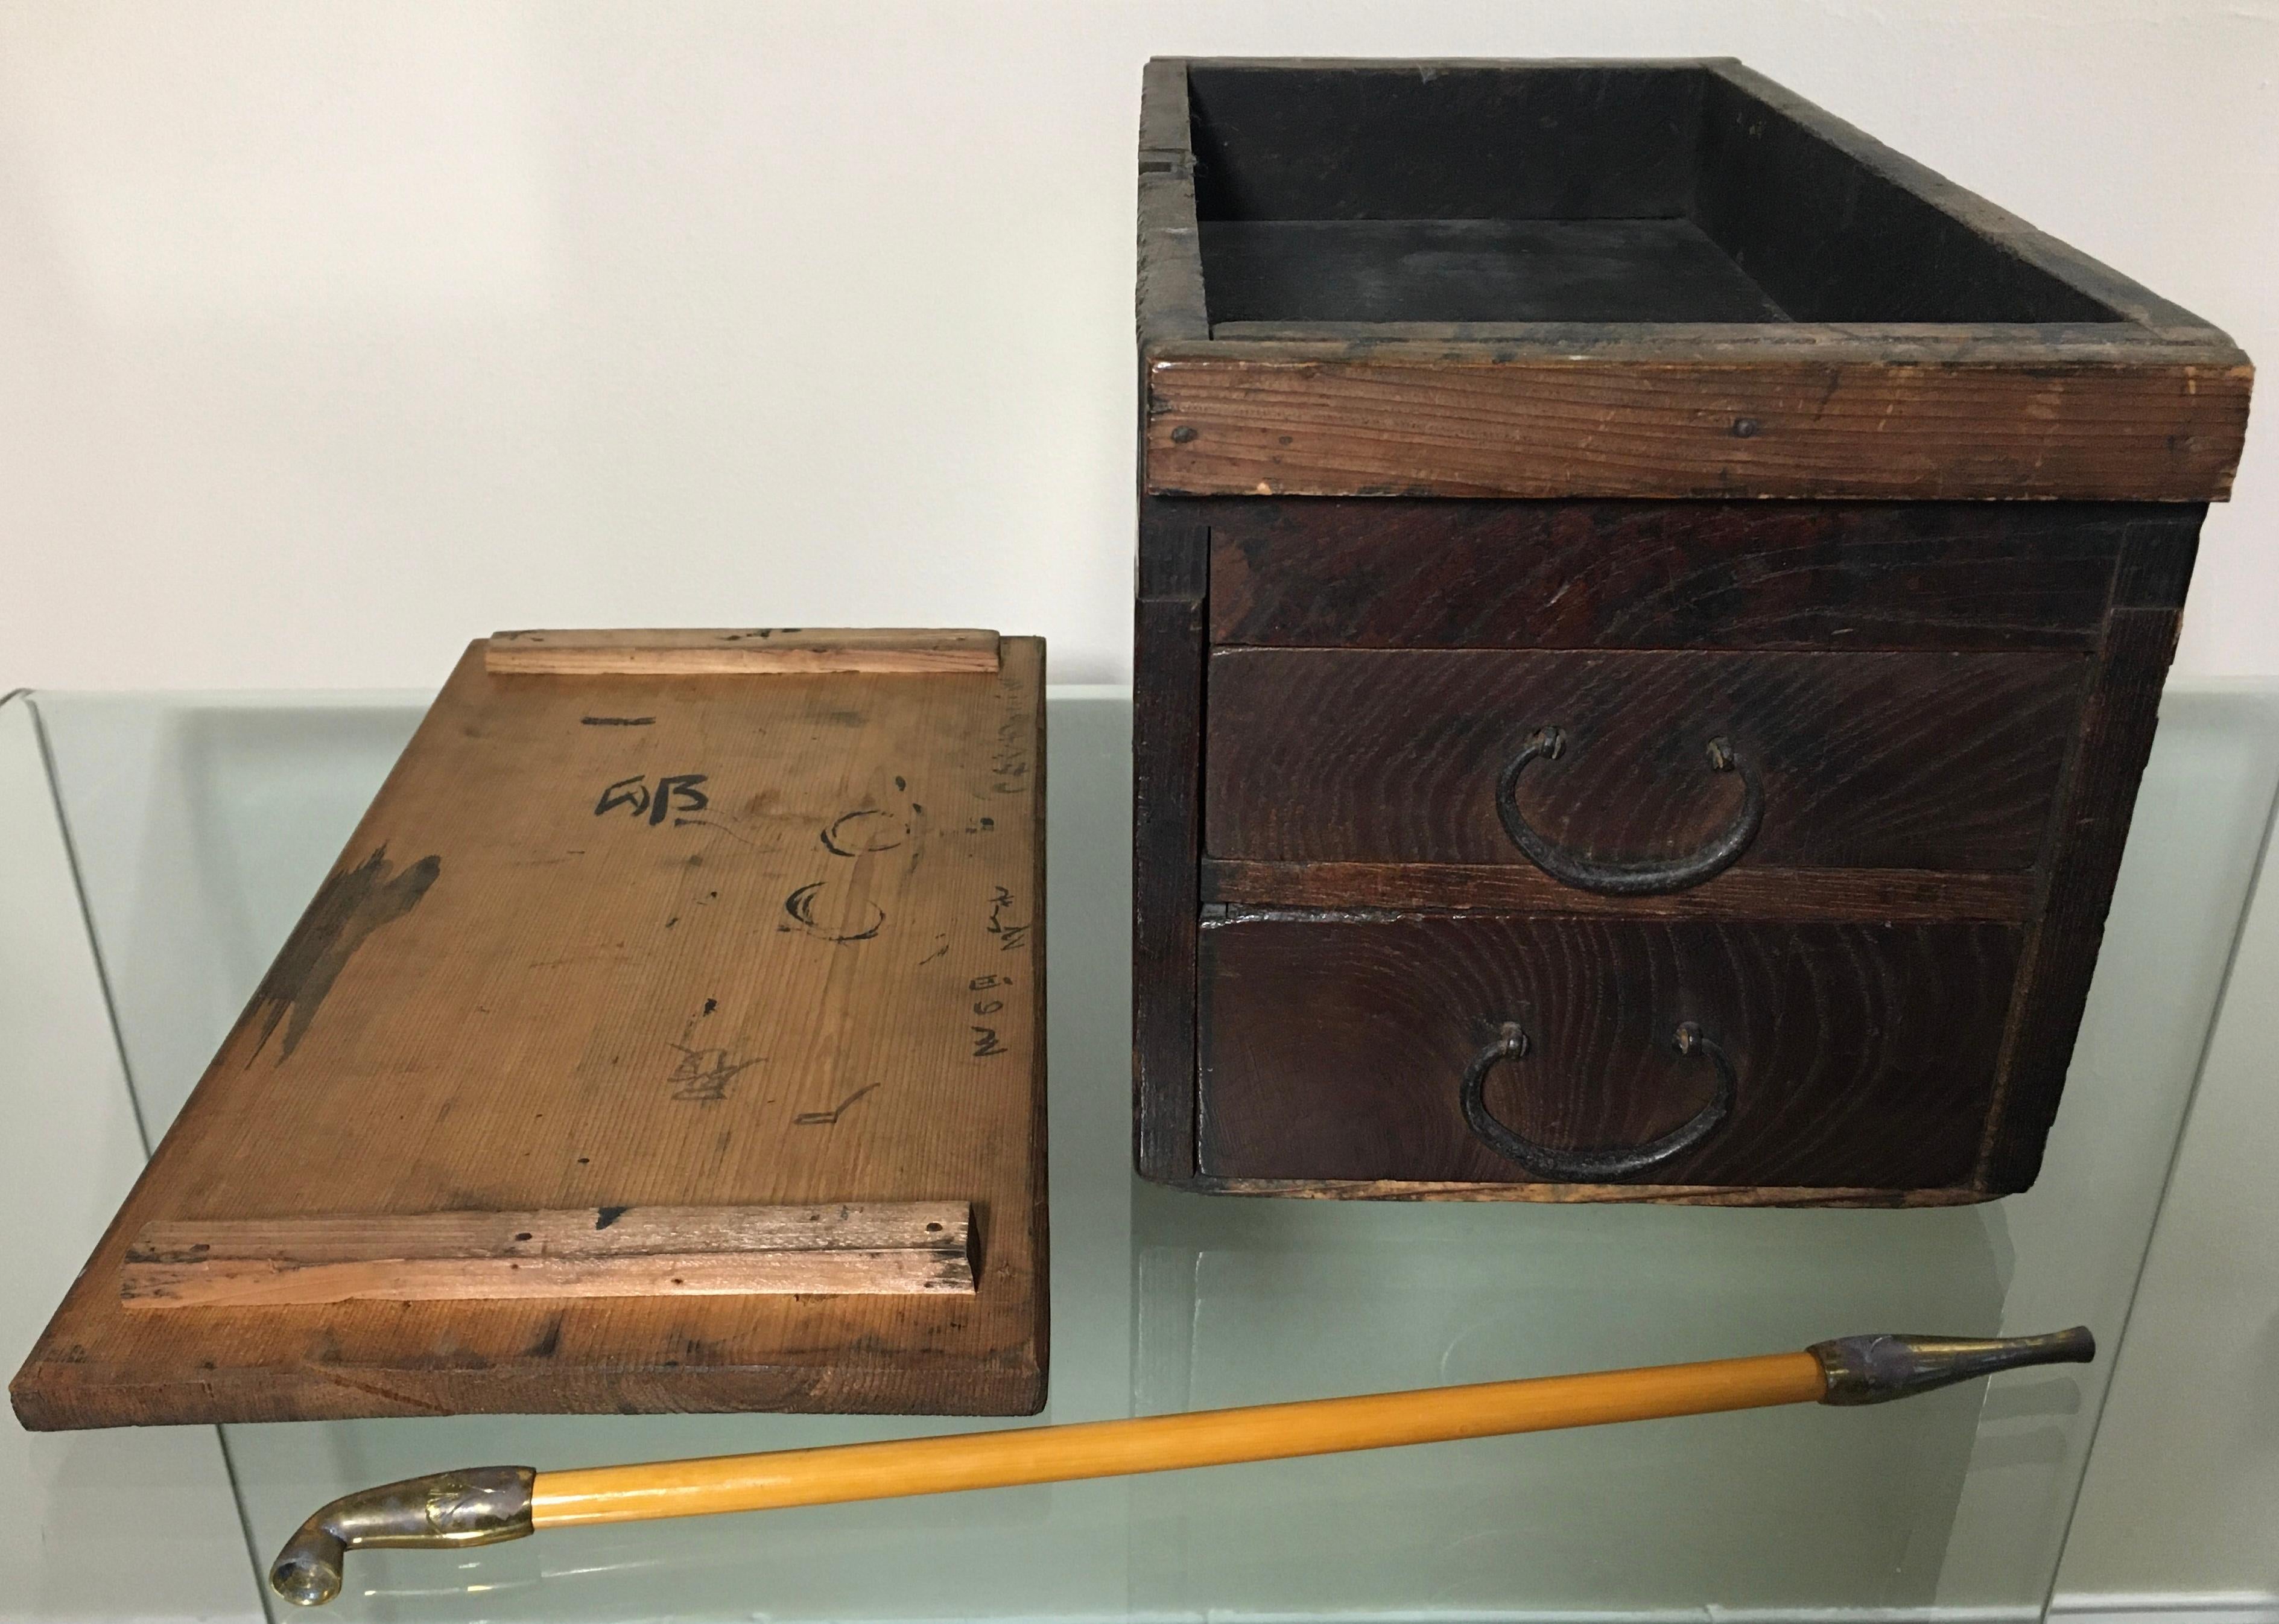 Cette ancienne boîte à tabac japonaise, dotée de tiroirs, un kiseru, est une pièce d'histoire captivante. La torsion chaude de l'orme raconte une histoire de temps.
La boîte présente des accessoires métalliques authentiques qui racontent le riche